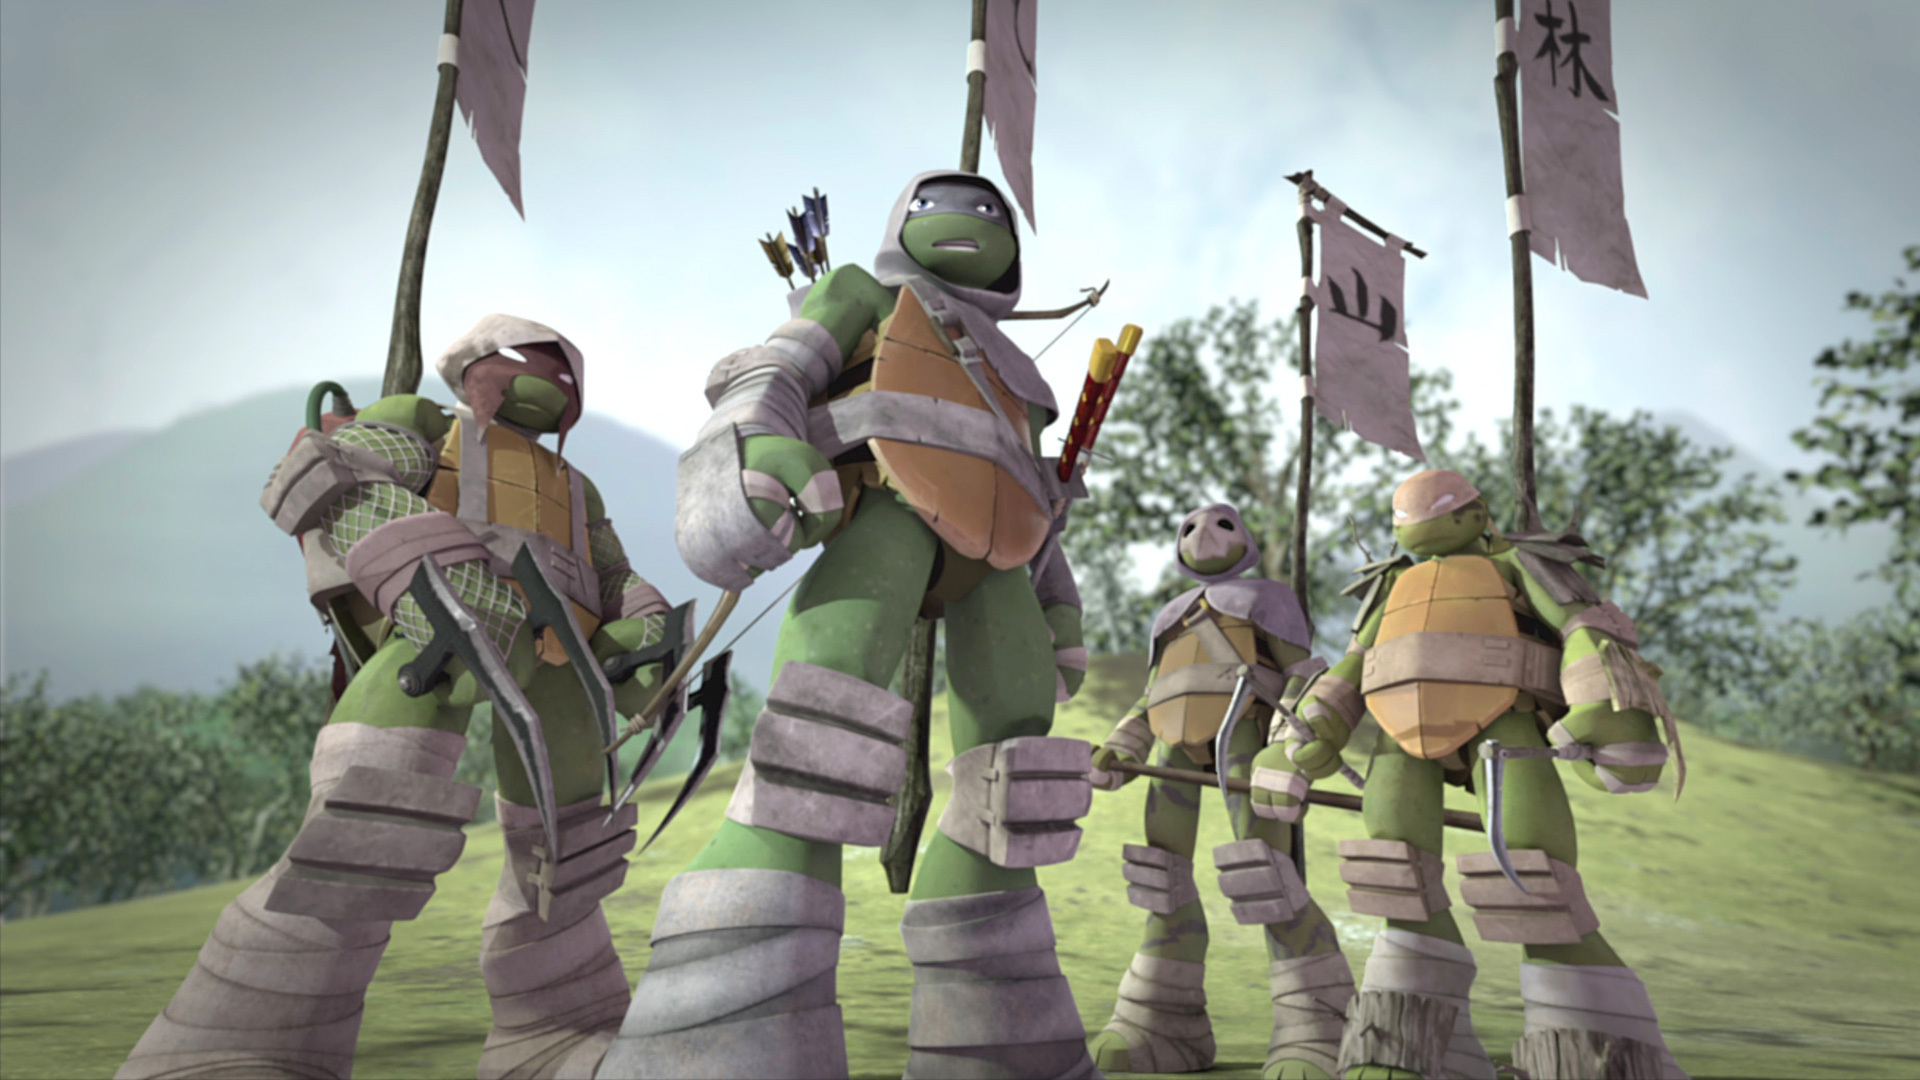 FIRST 8 EPISODES of TMNT (2012) 🐢  Teenage Mutant Ninja Turtles 